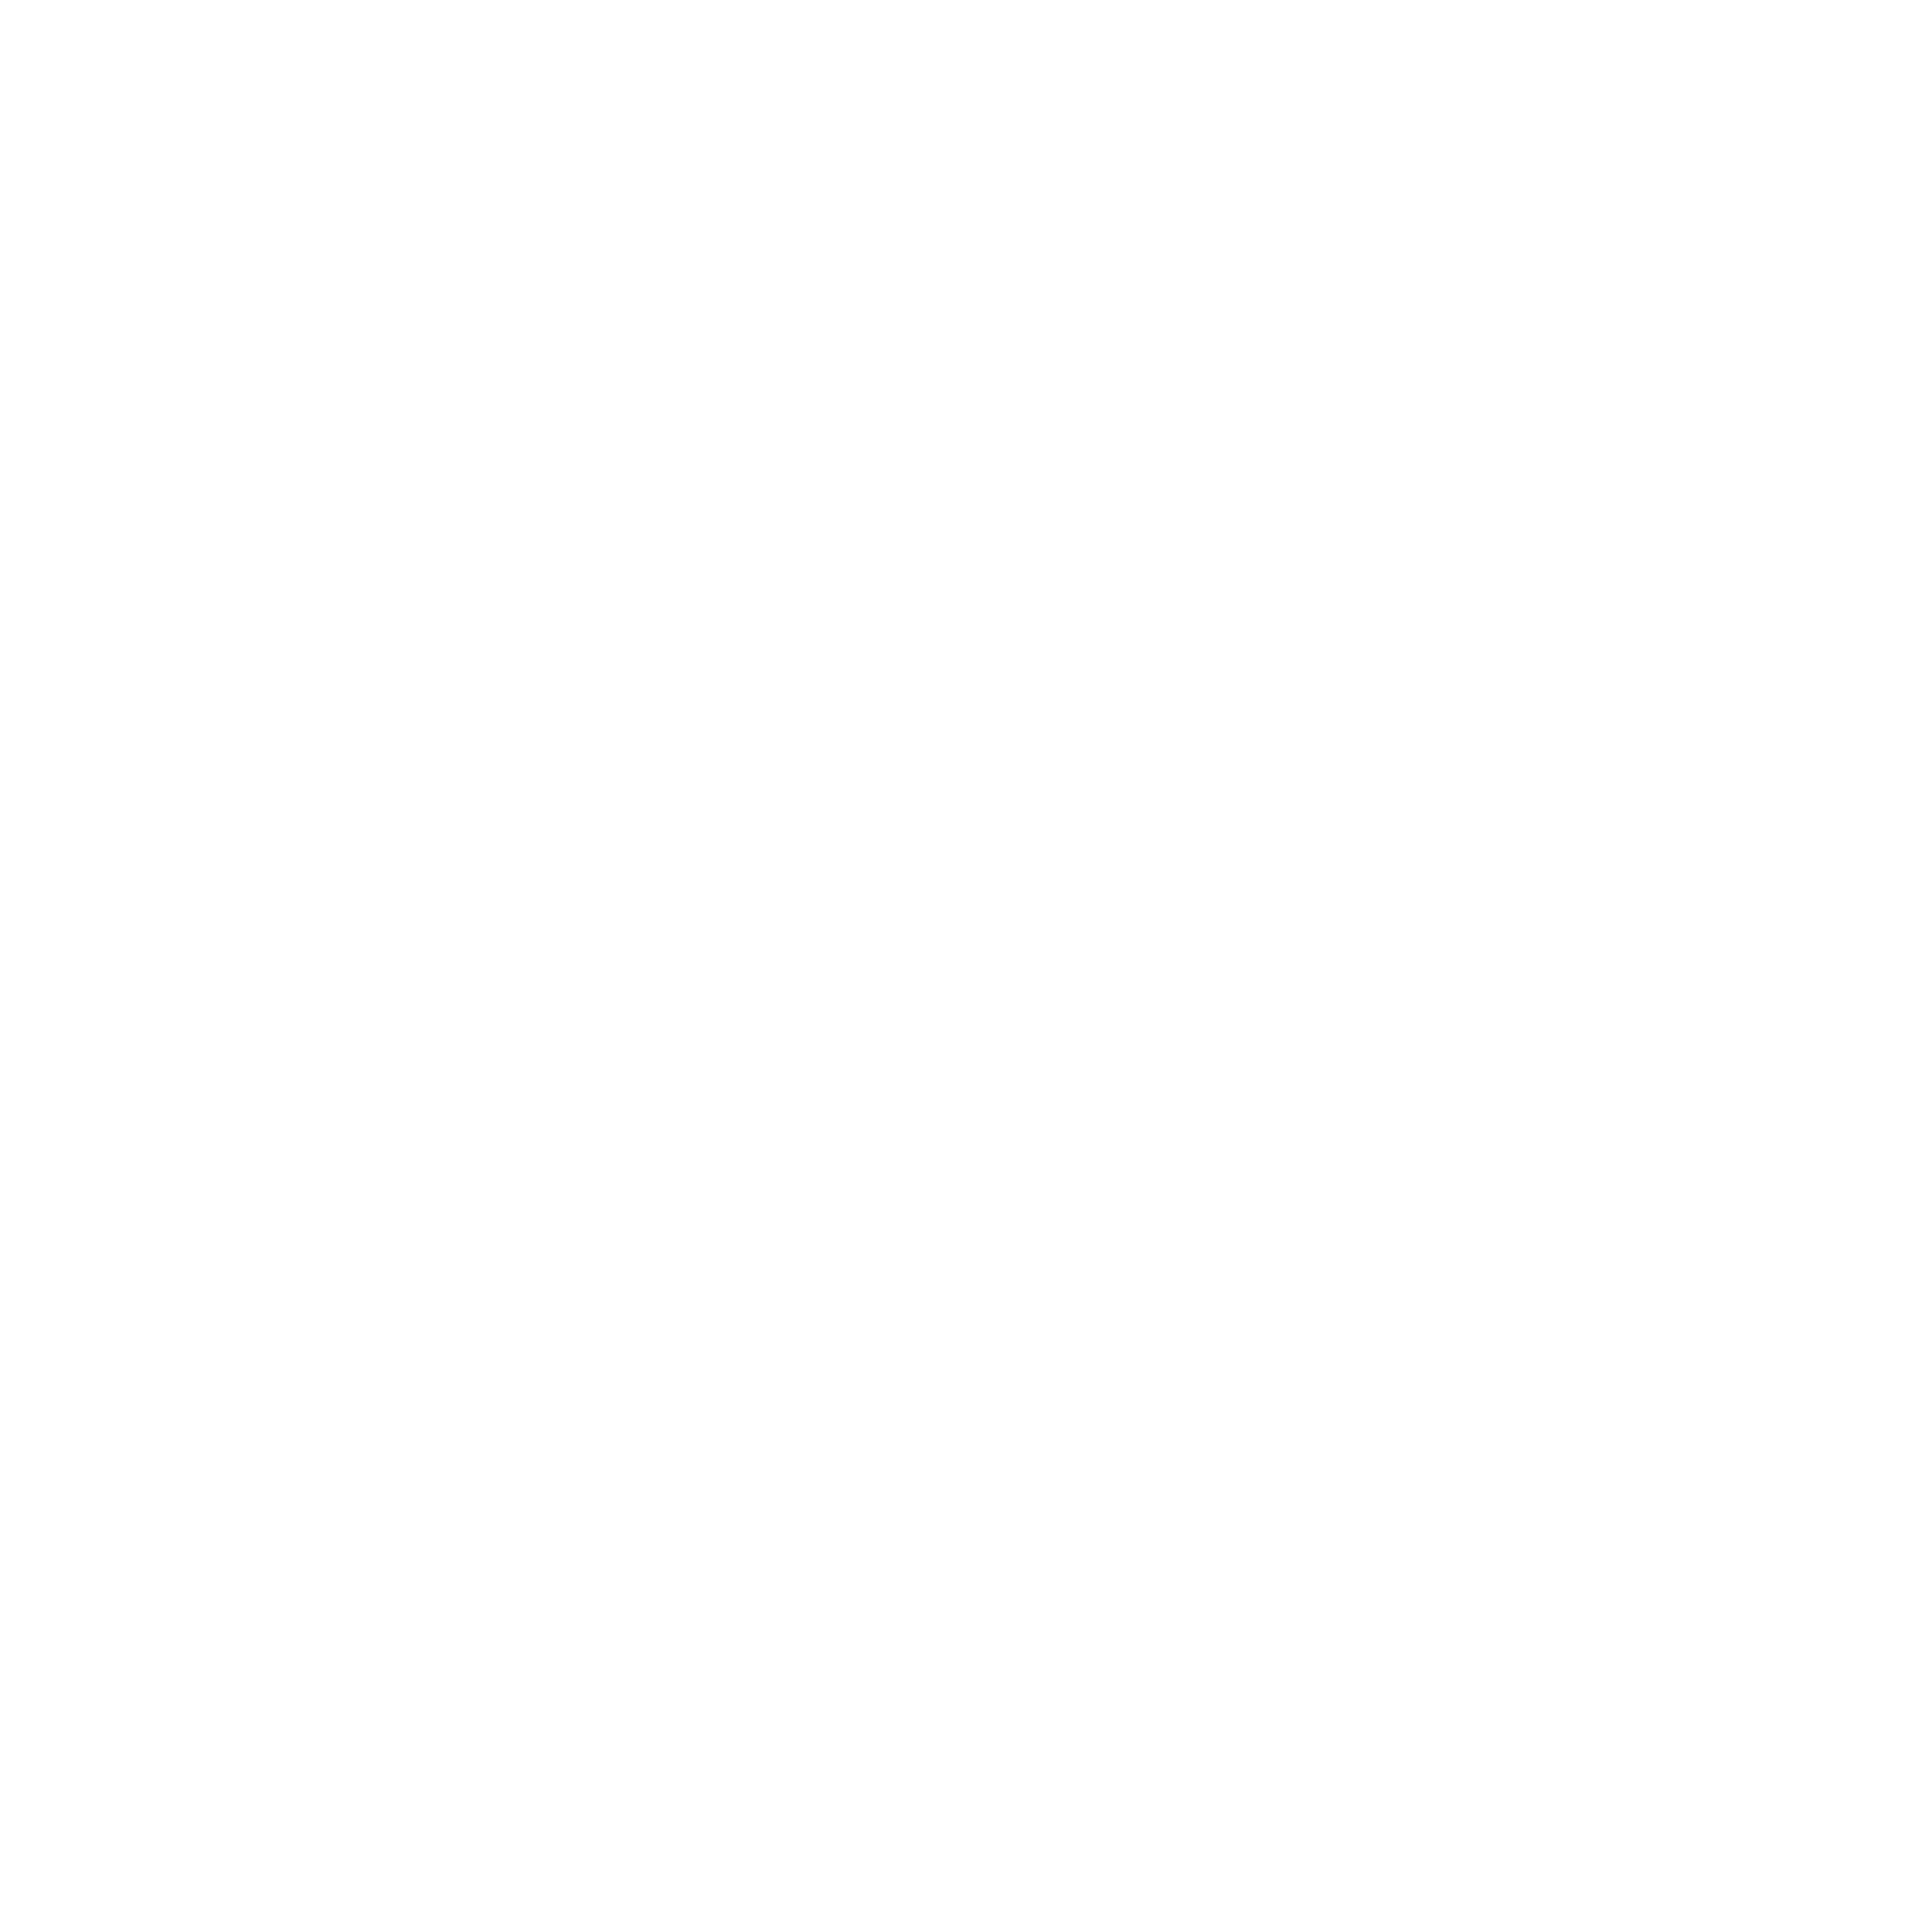 wecraftinteractive_logo